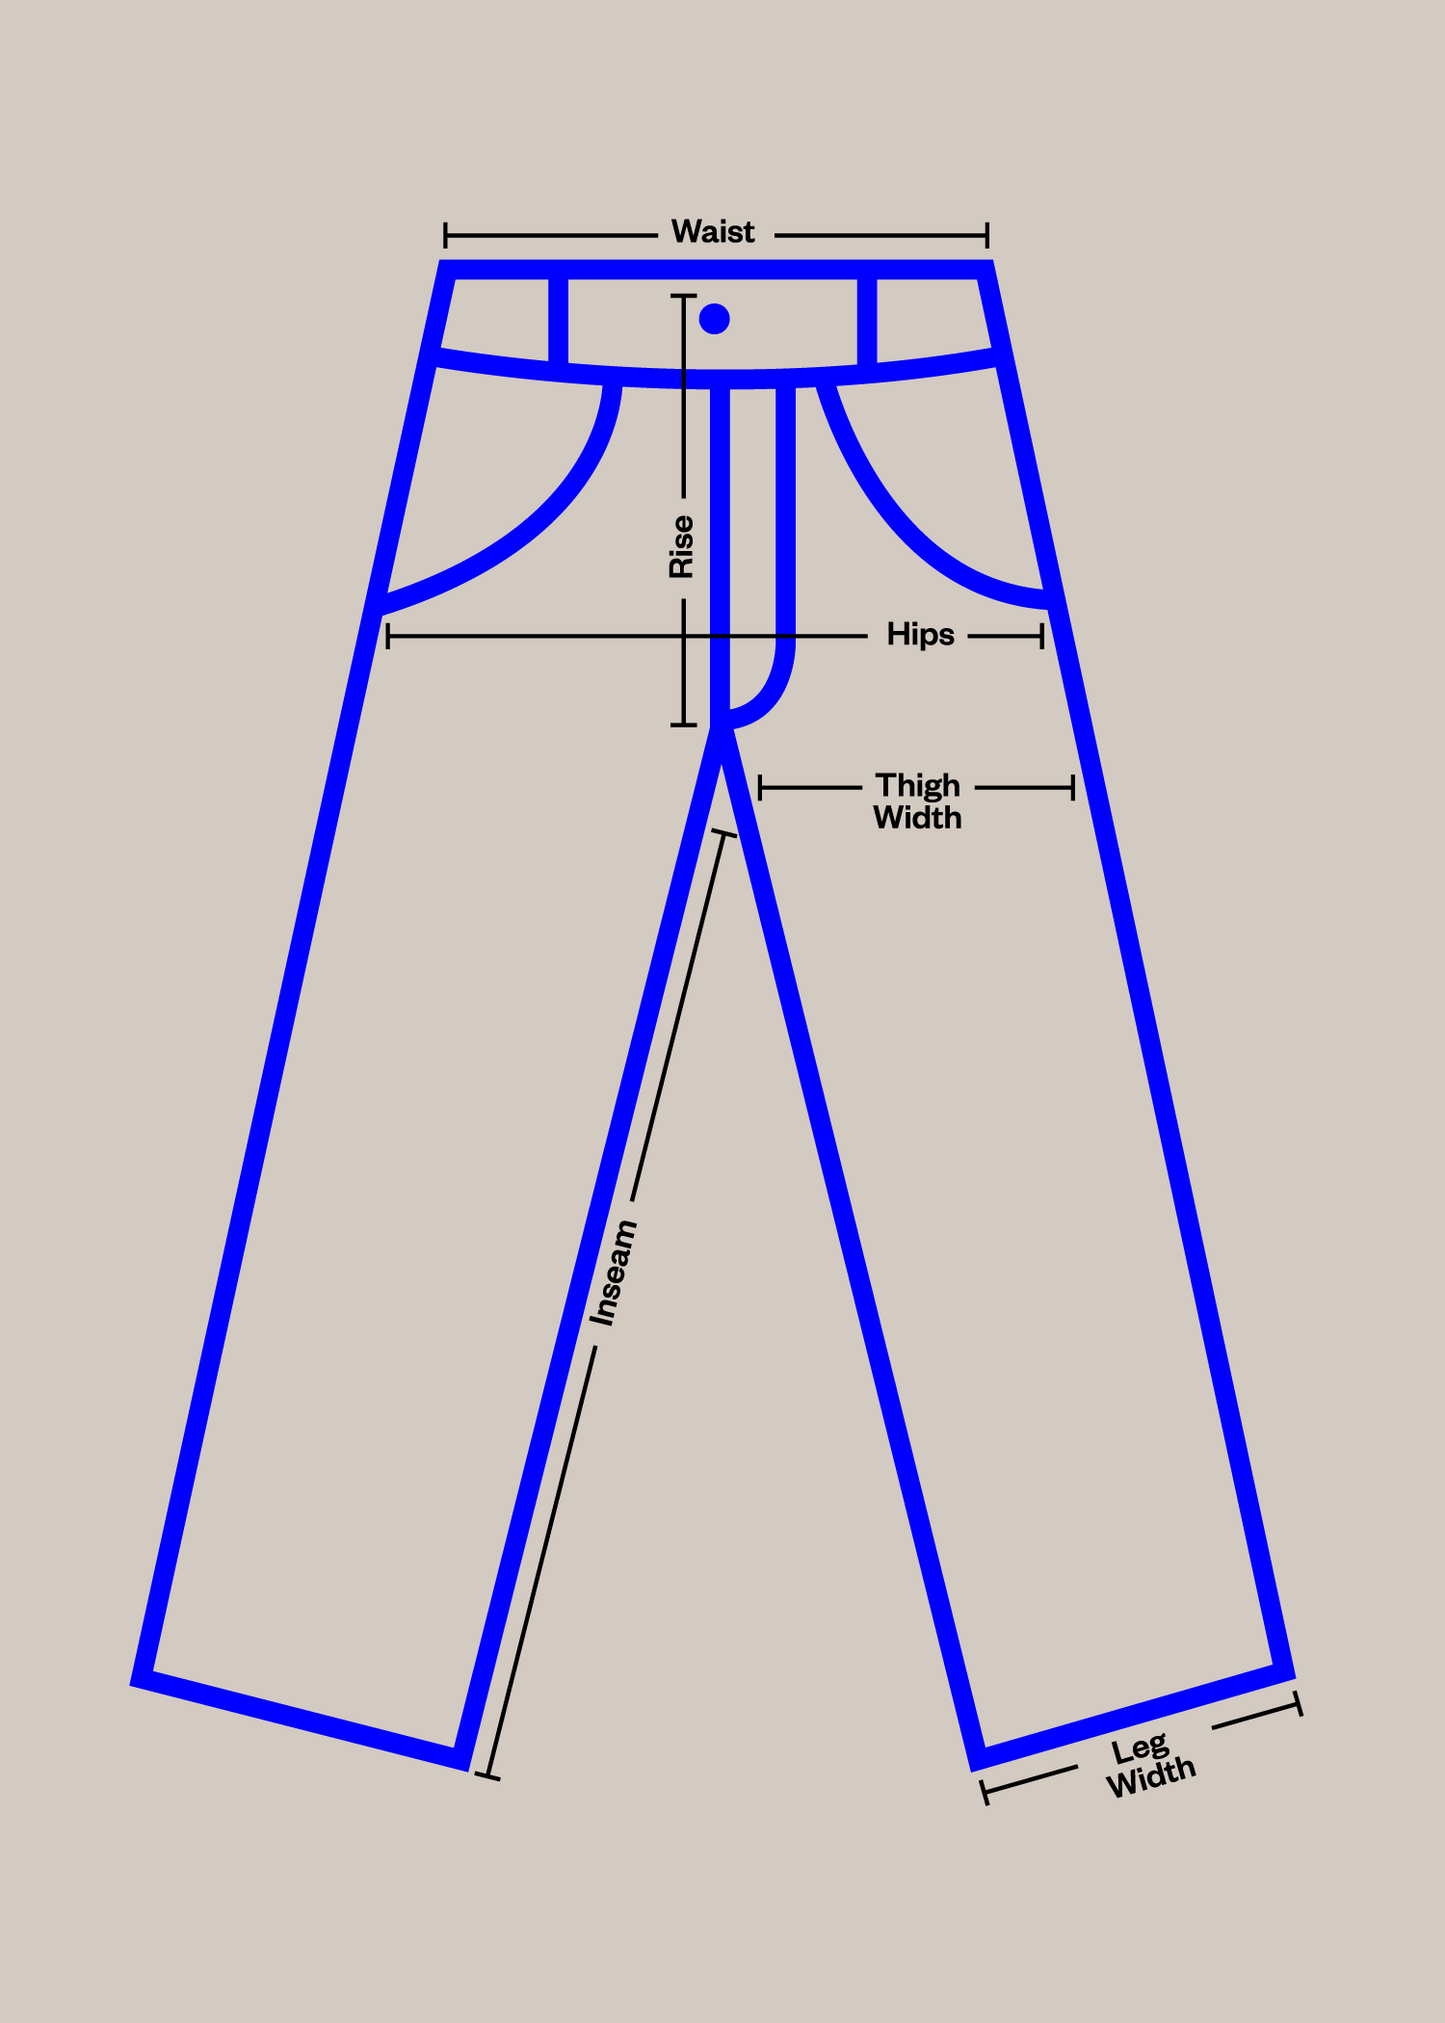 Vintage 1980s Military Cargo Pants Size Women's 40 Men's 42